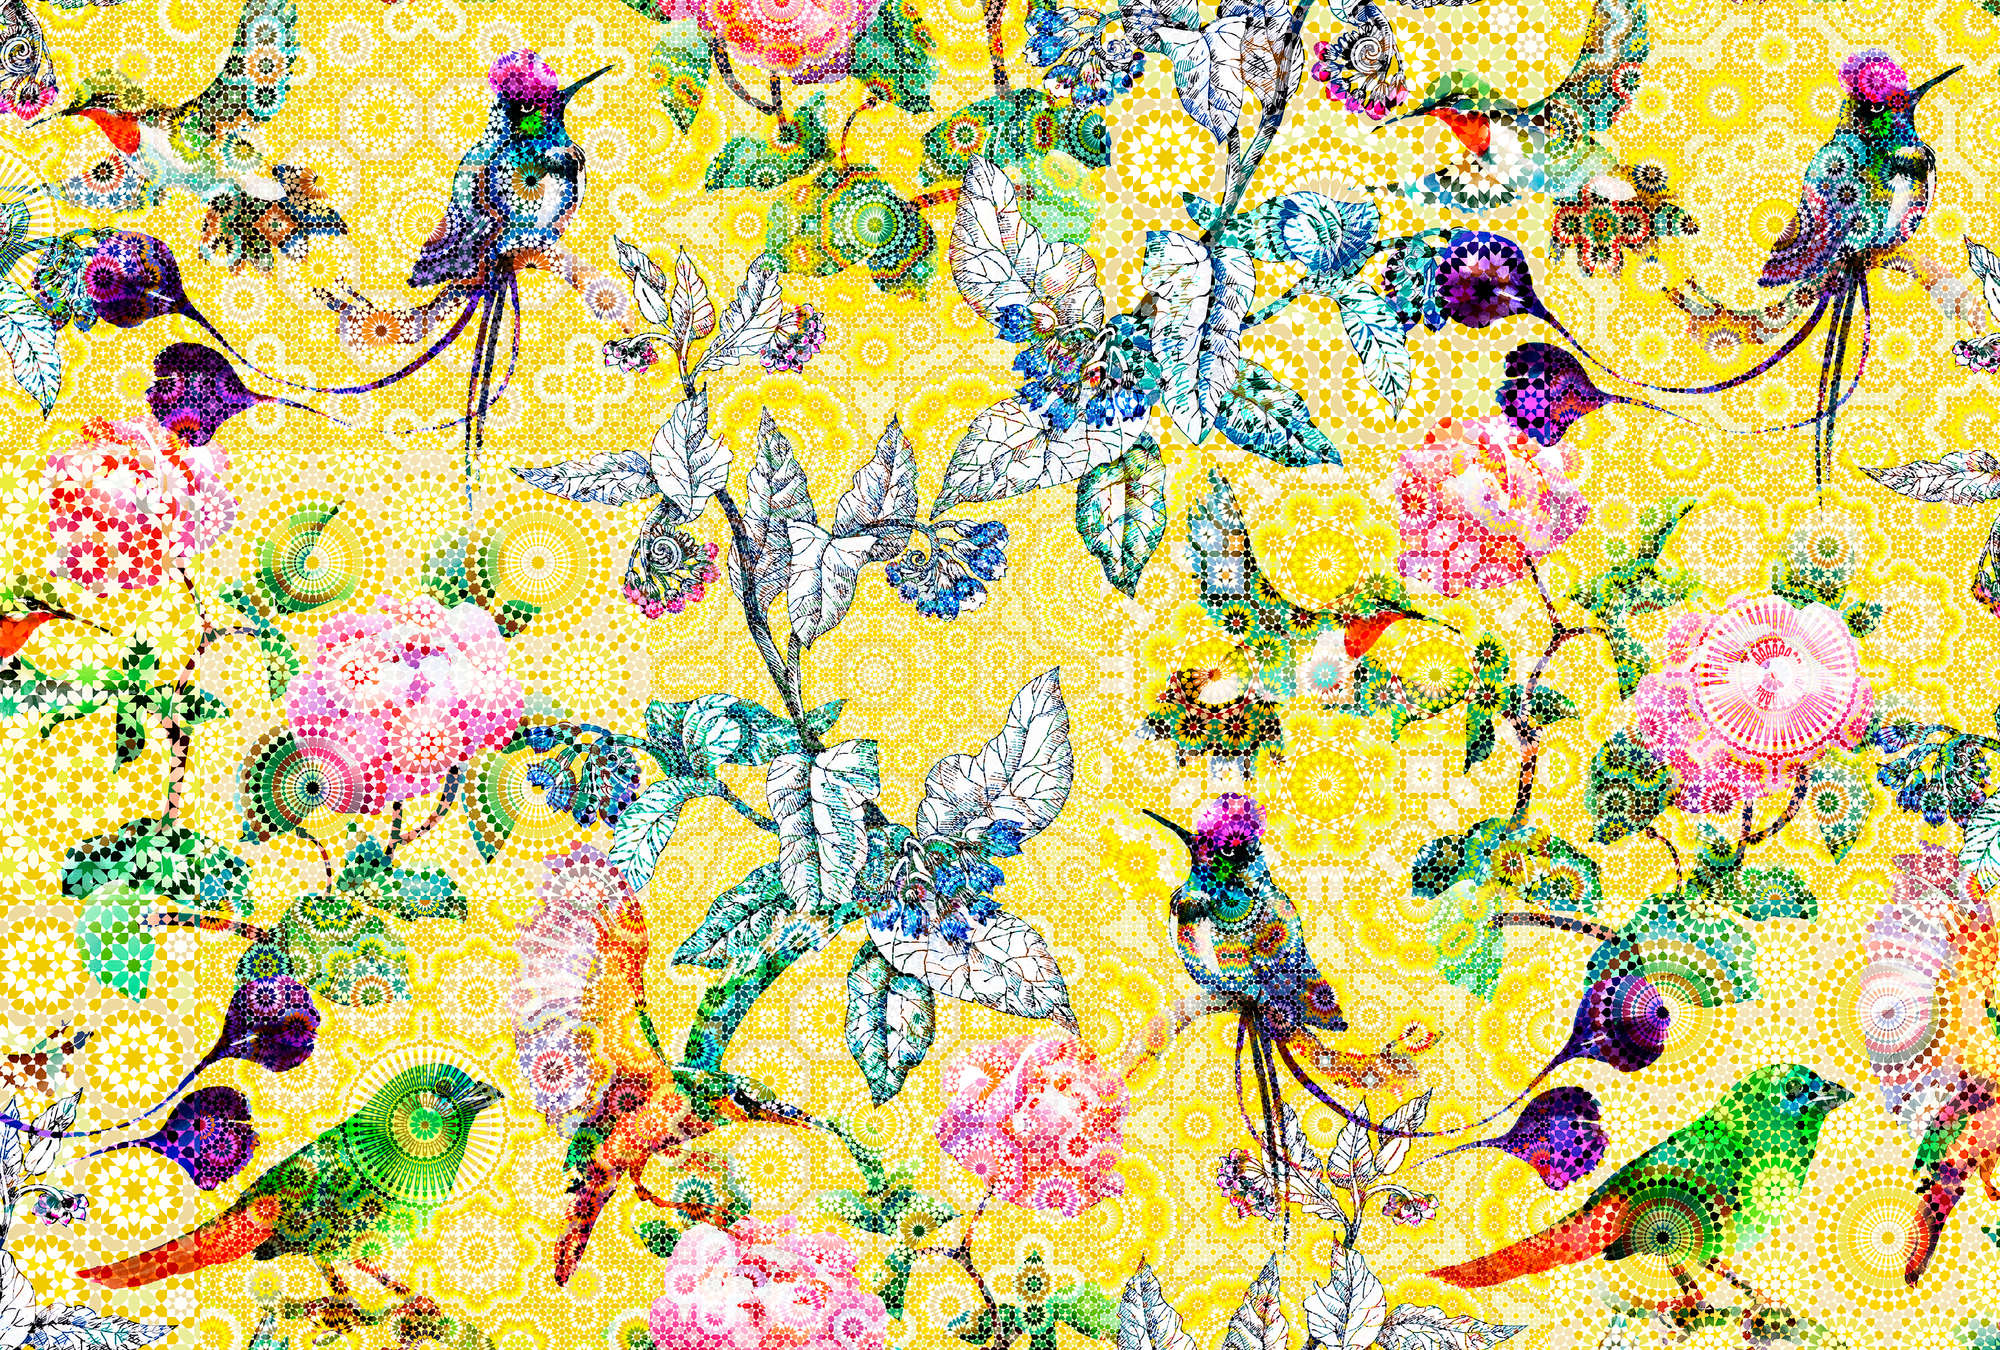             Fototapete exotisches Blumen Mosaik – Gelb, Grün
        